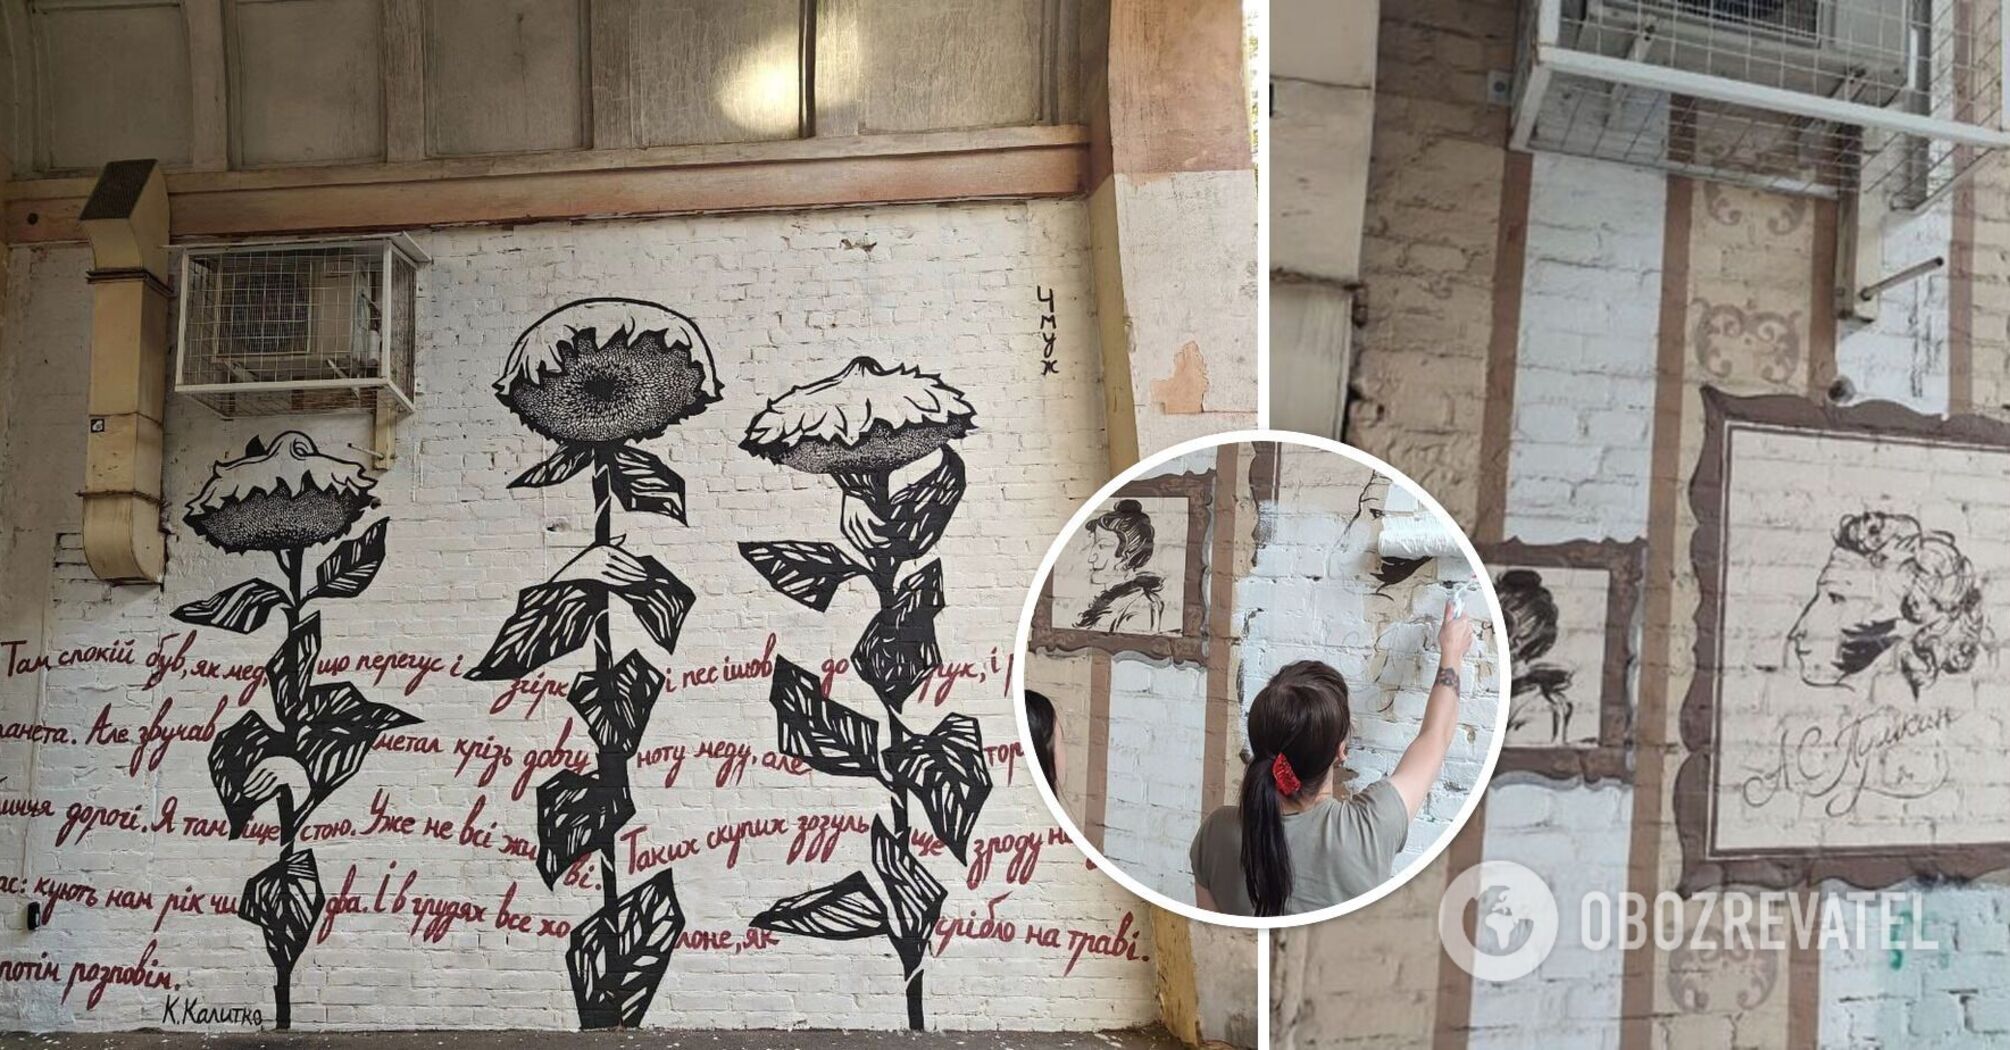 Słoneczniki i ukraińska poezja zamiast Puszkina: słynny mural przemalowany w Charkowie. Zdjęcie